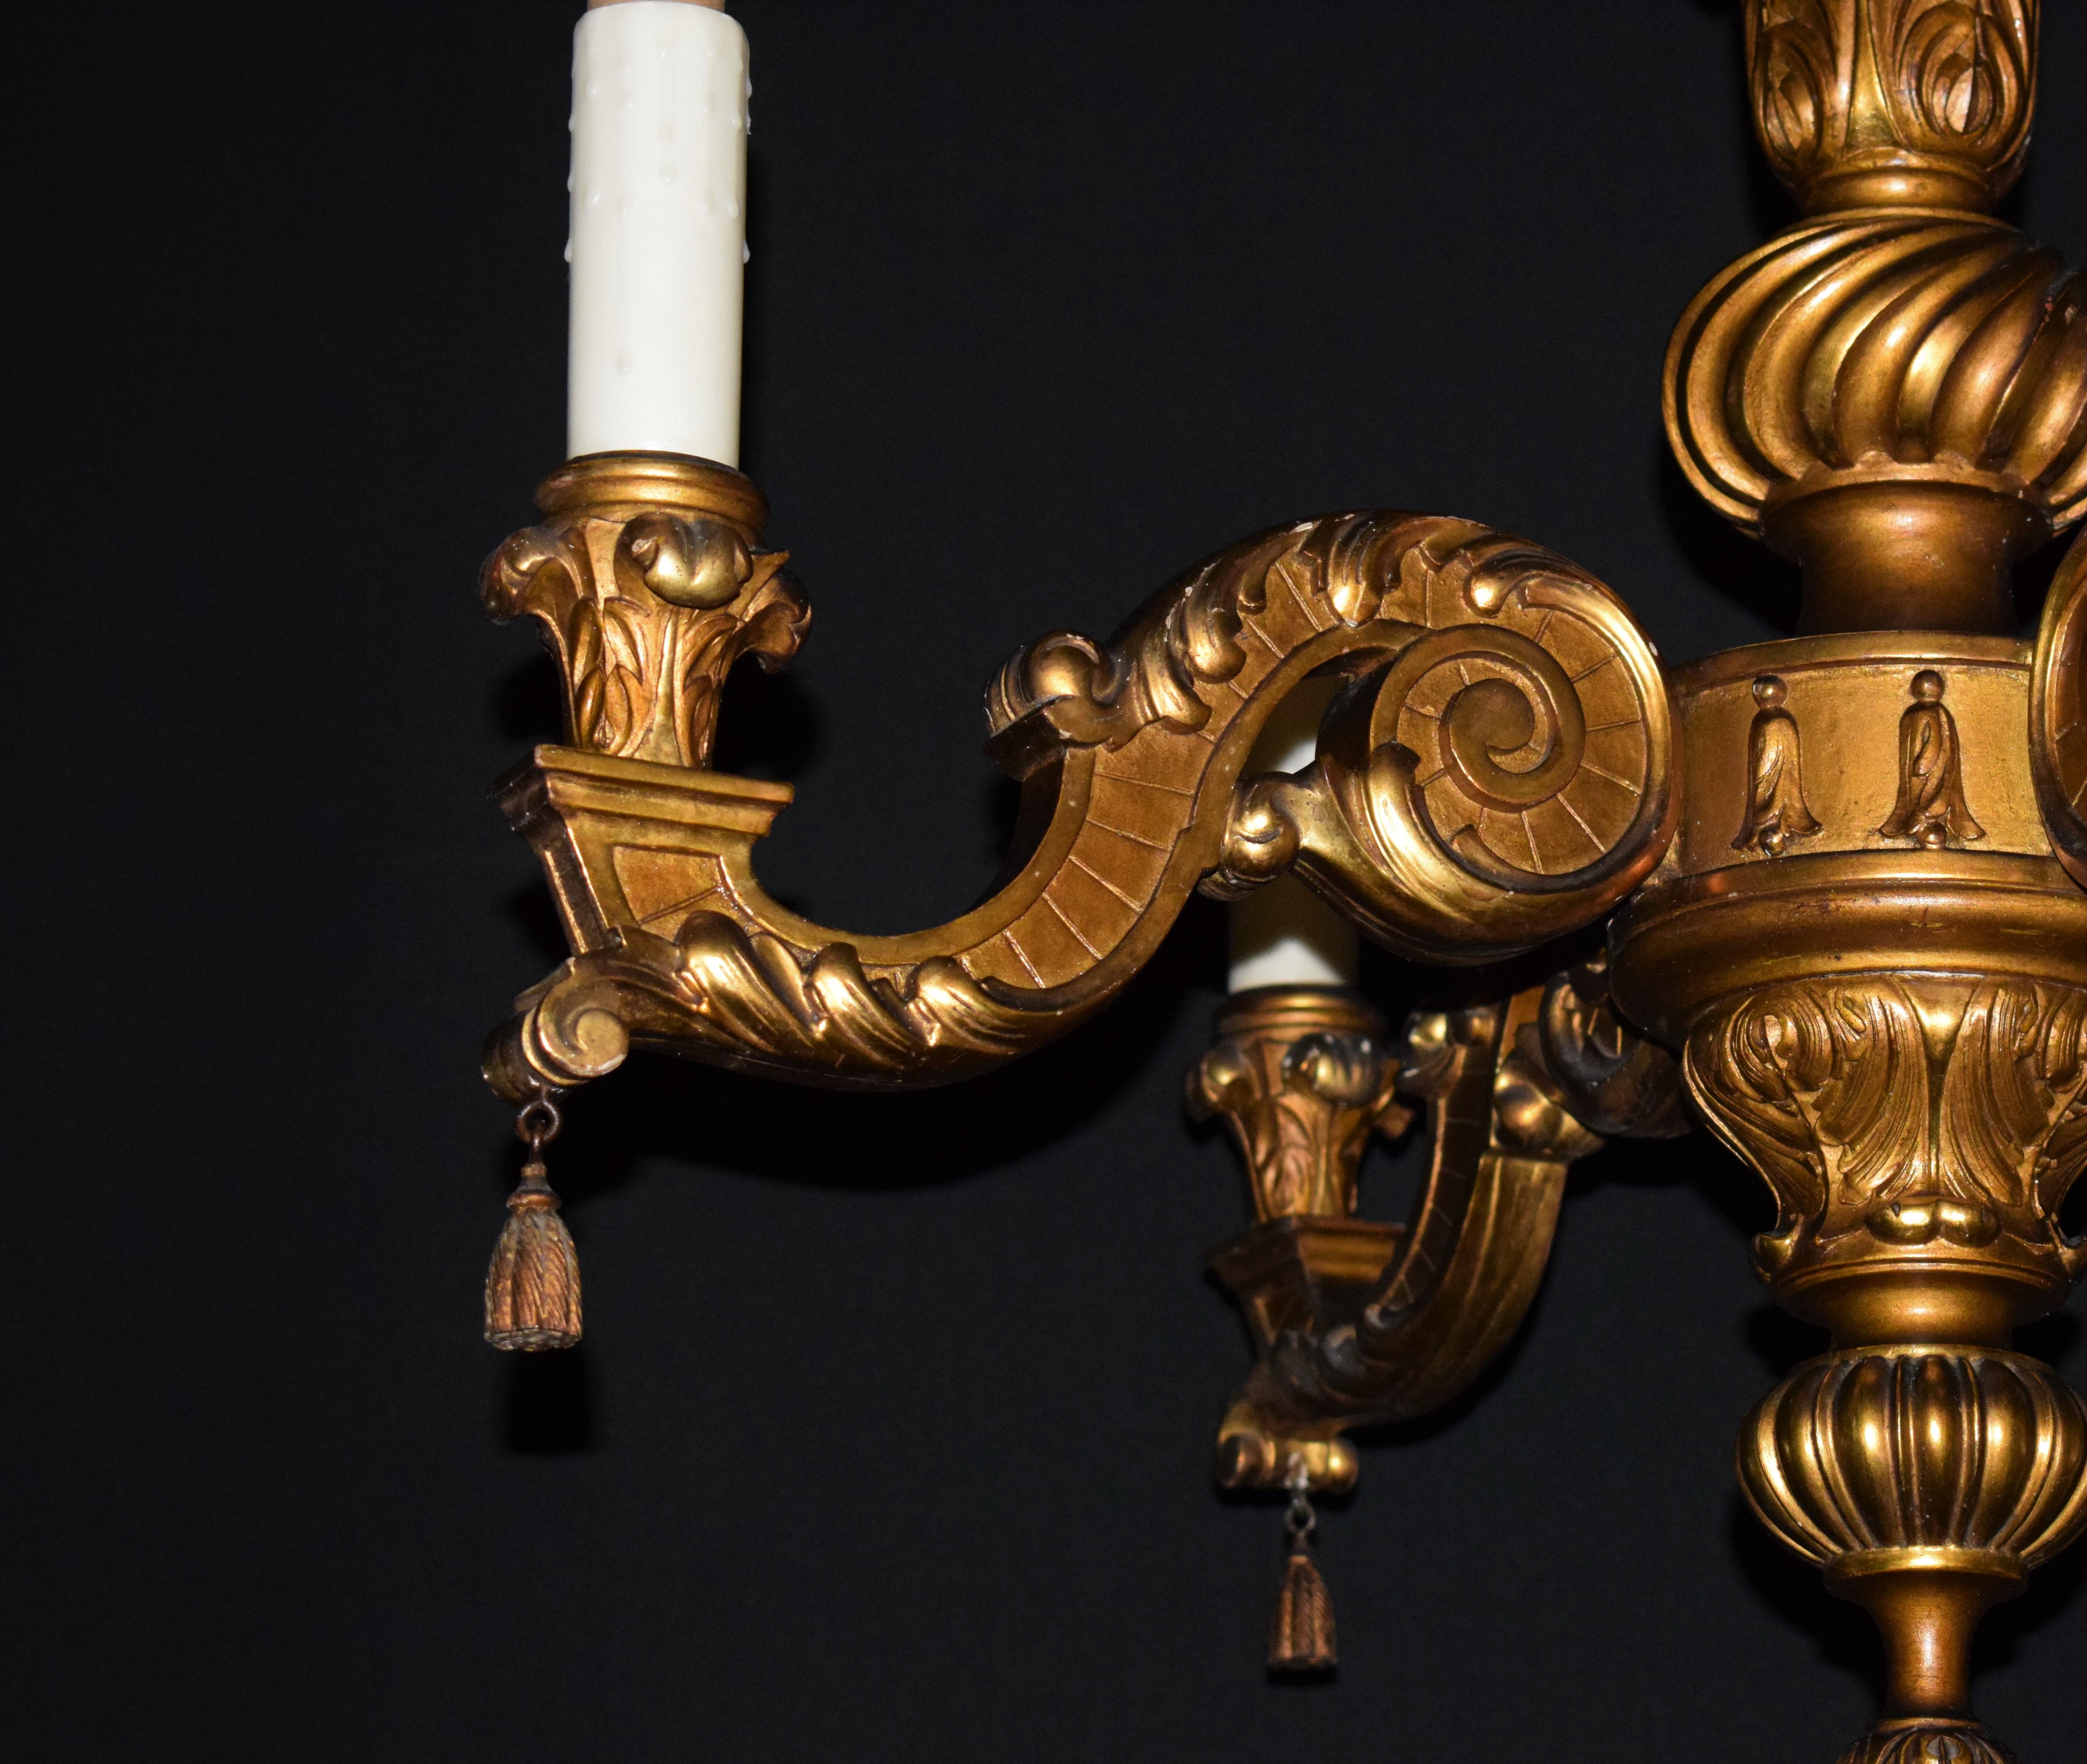 Ein sehr schöner Kronleuchter im Regence-Stil aus Vergoldung. Frankreich, um 1910. 4-Licht
Abmessungen: Höhe 29